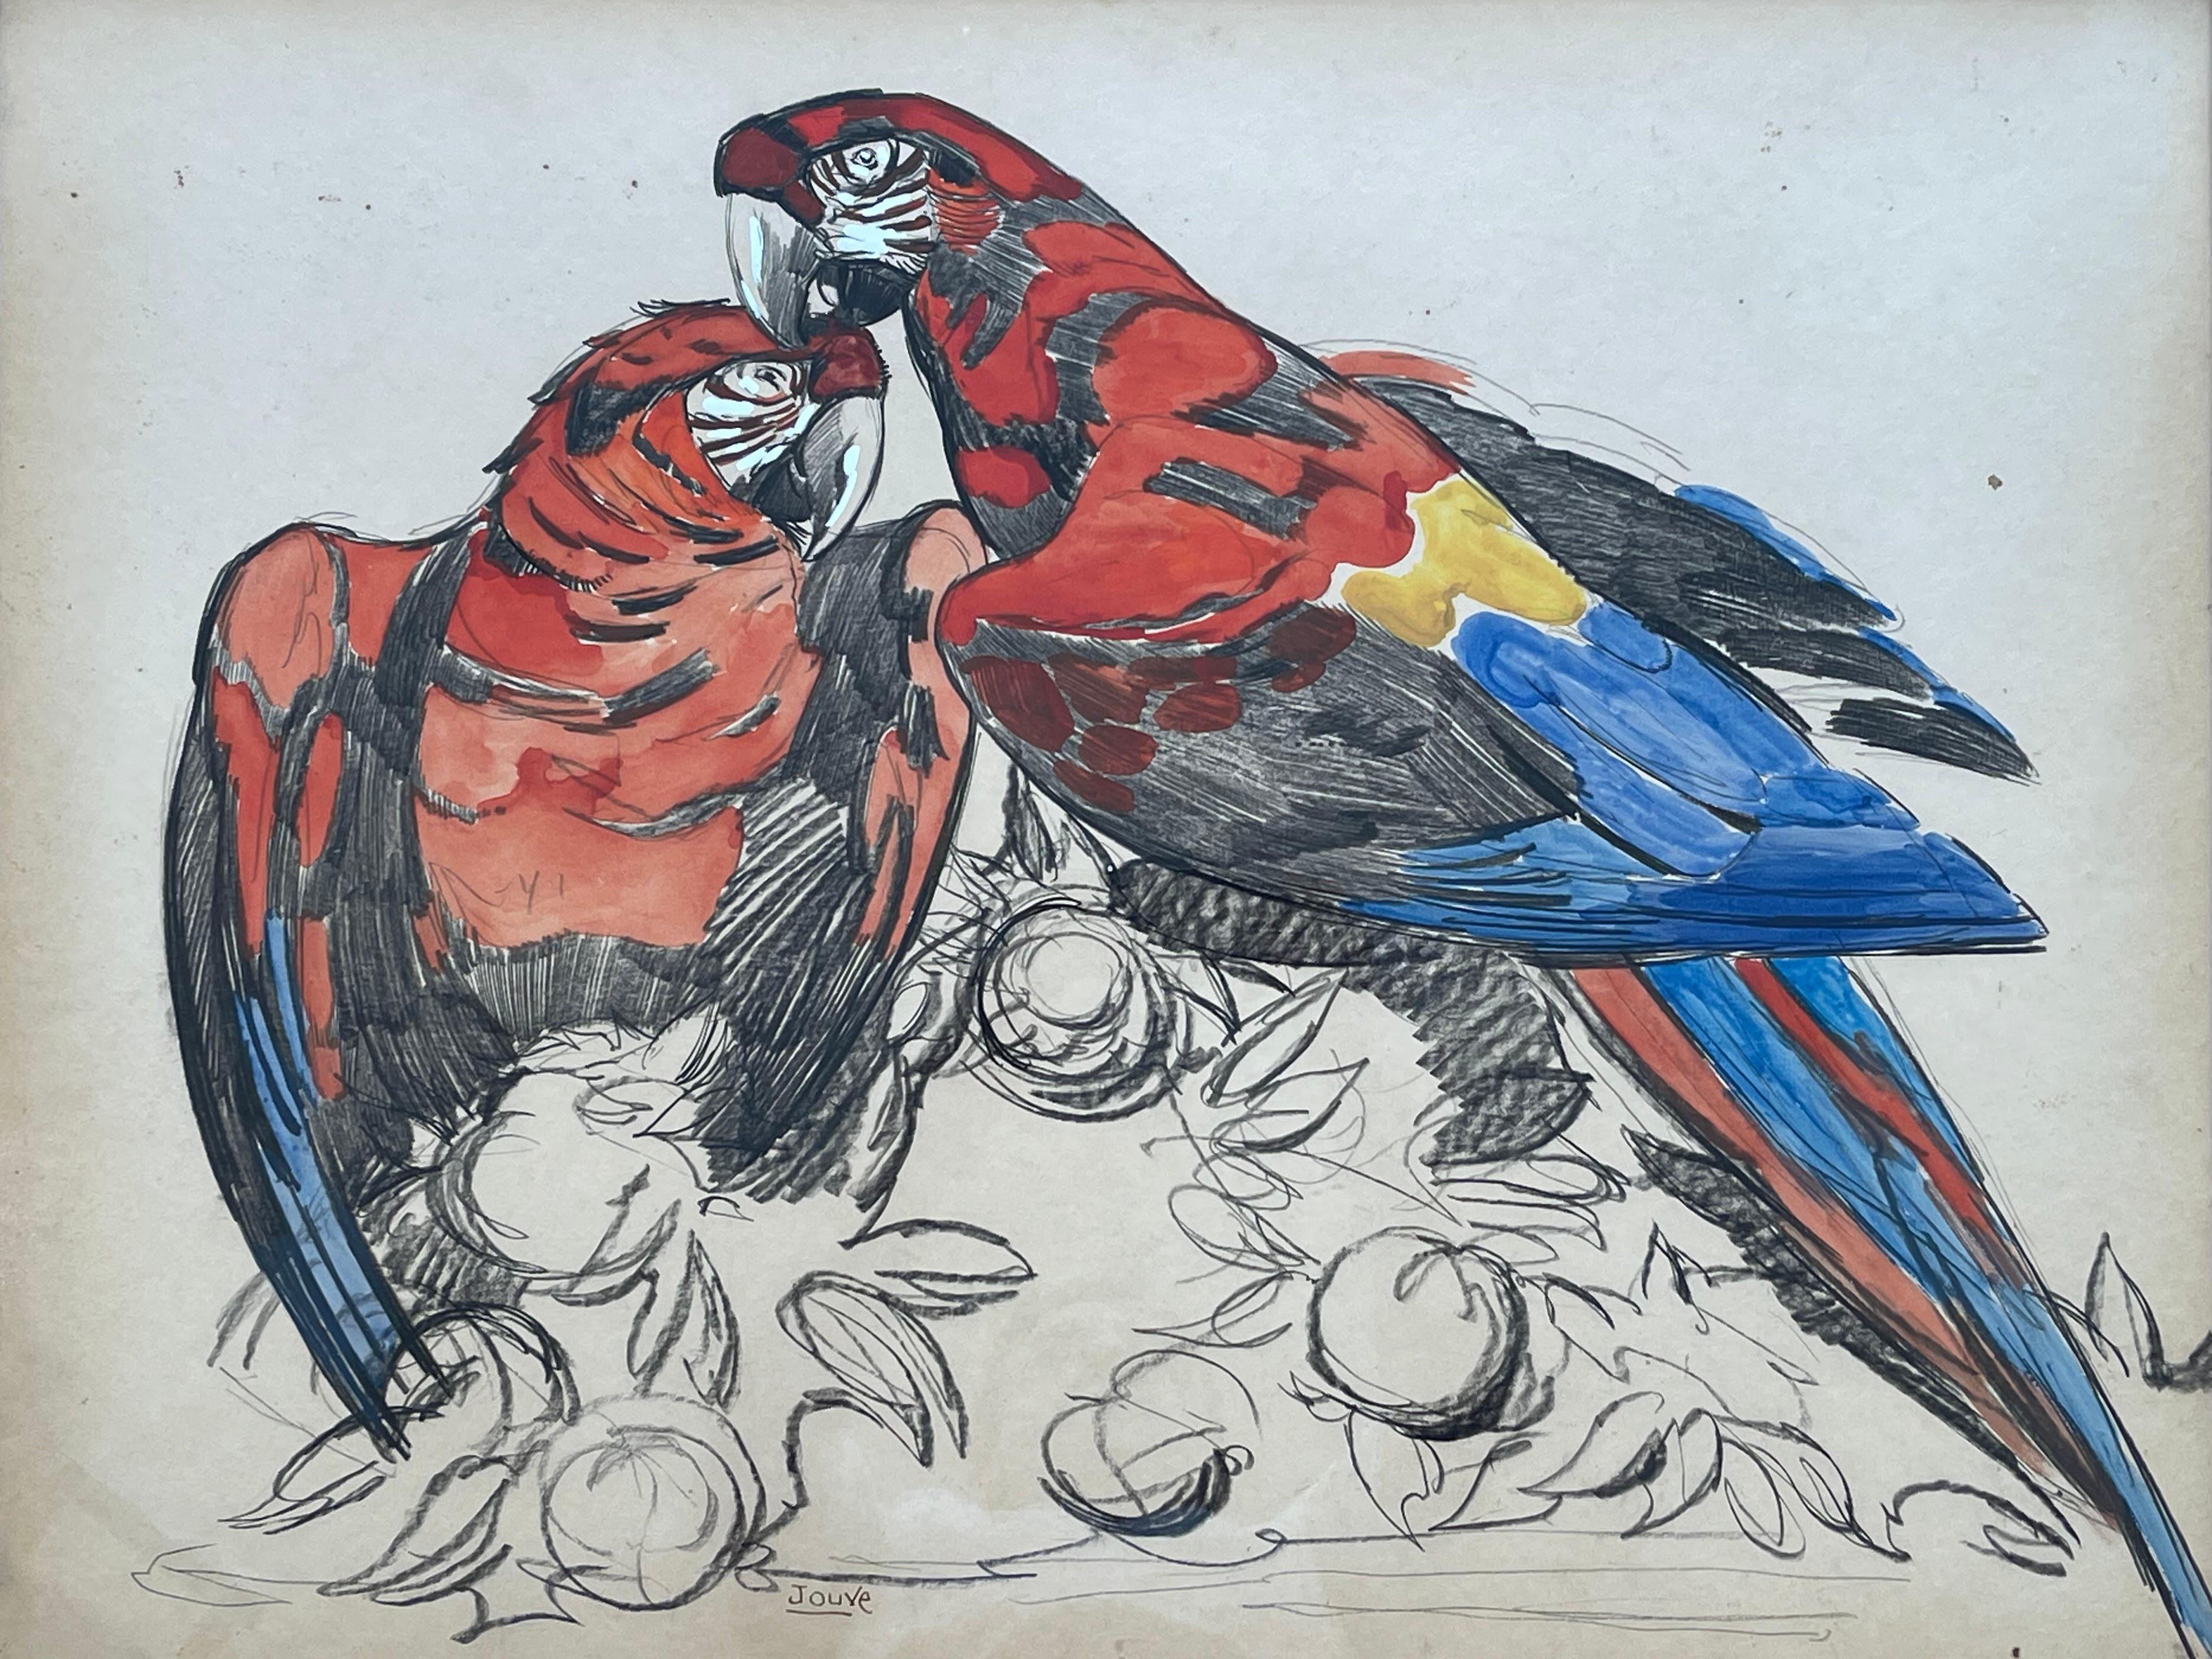 Cette superbe peinture a été créée par l'artiste français Paul Jouve (1866-1924) dans les années 1930 et représente deux perroquets.

Paul Jouve, illustrateur et sculpteur, a toujours été passionné par les animaux, comme en témoignent ses fabuleuses